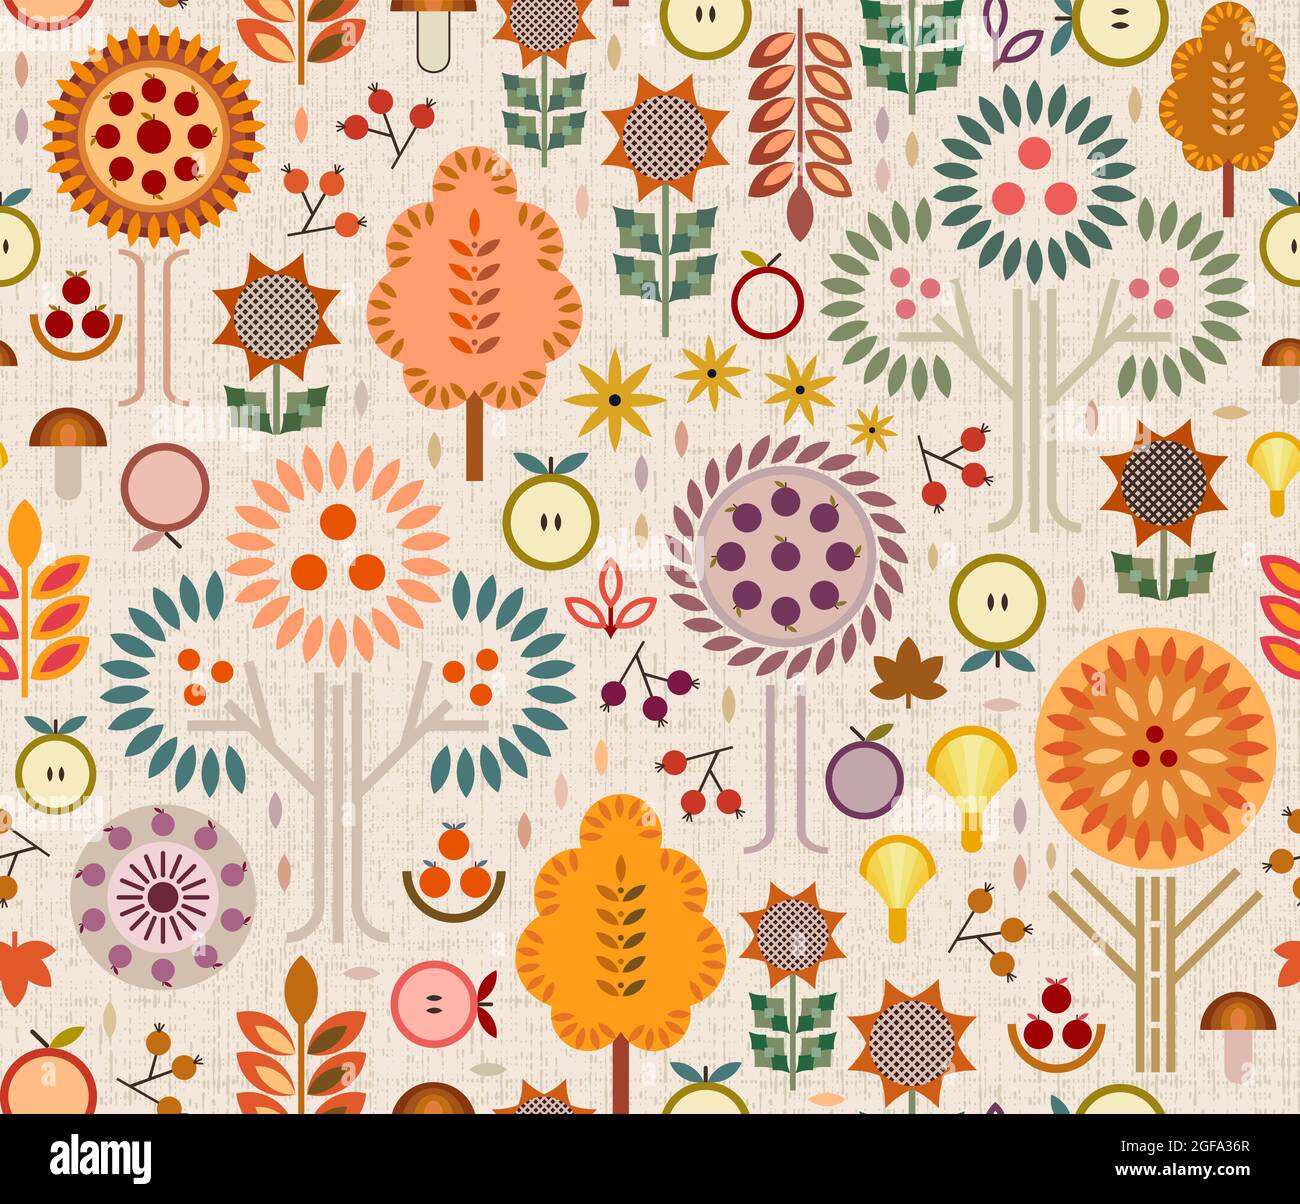 Saison de récolte d'automne concept avec des pommes, prunes, baies, champignons de forme unique, arbres avec des feuilles de couleur changeante, florals terreux géométriques. Illustration de Vecteur